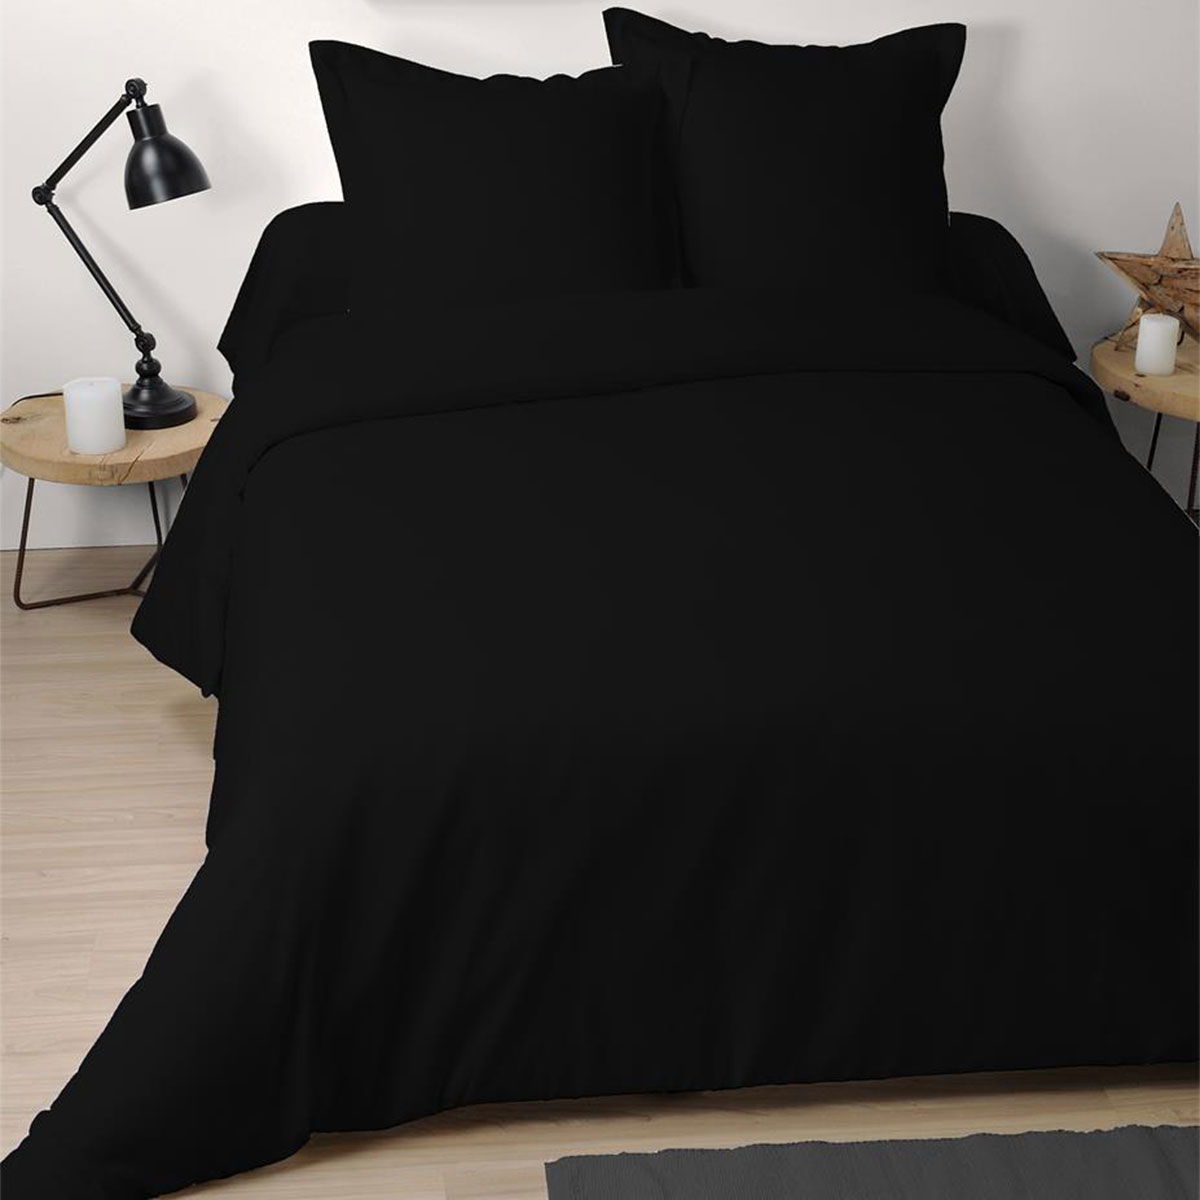 Pillow case 65 x 65 cm - Black